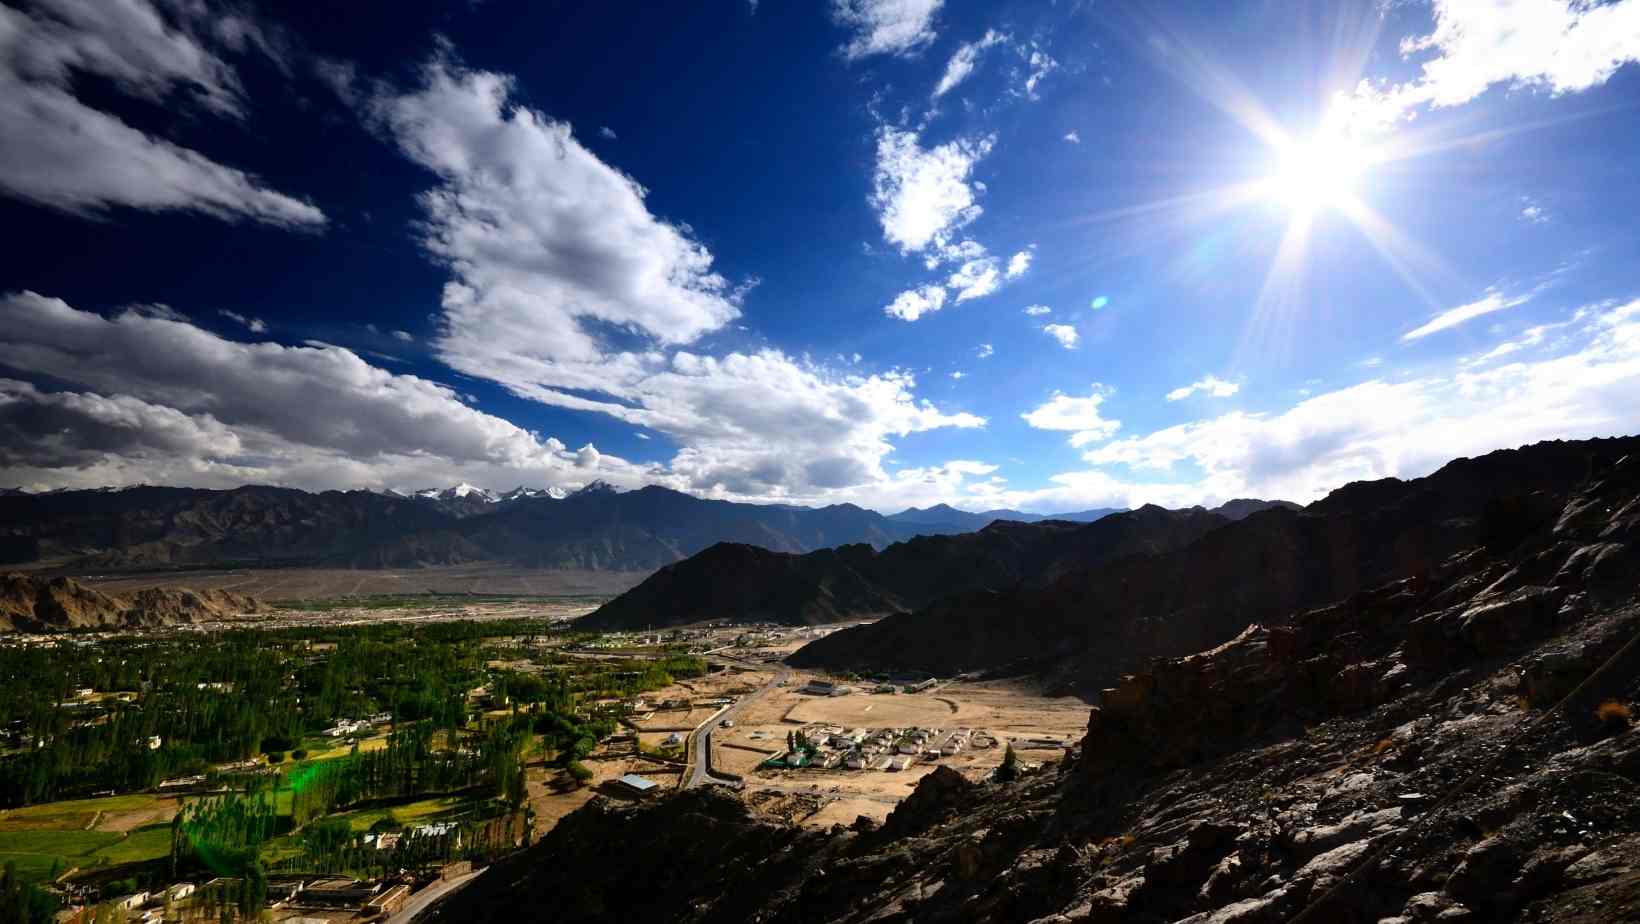 Terrains of Leh and Ladakh